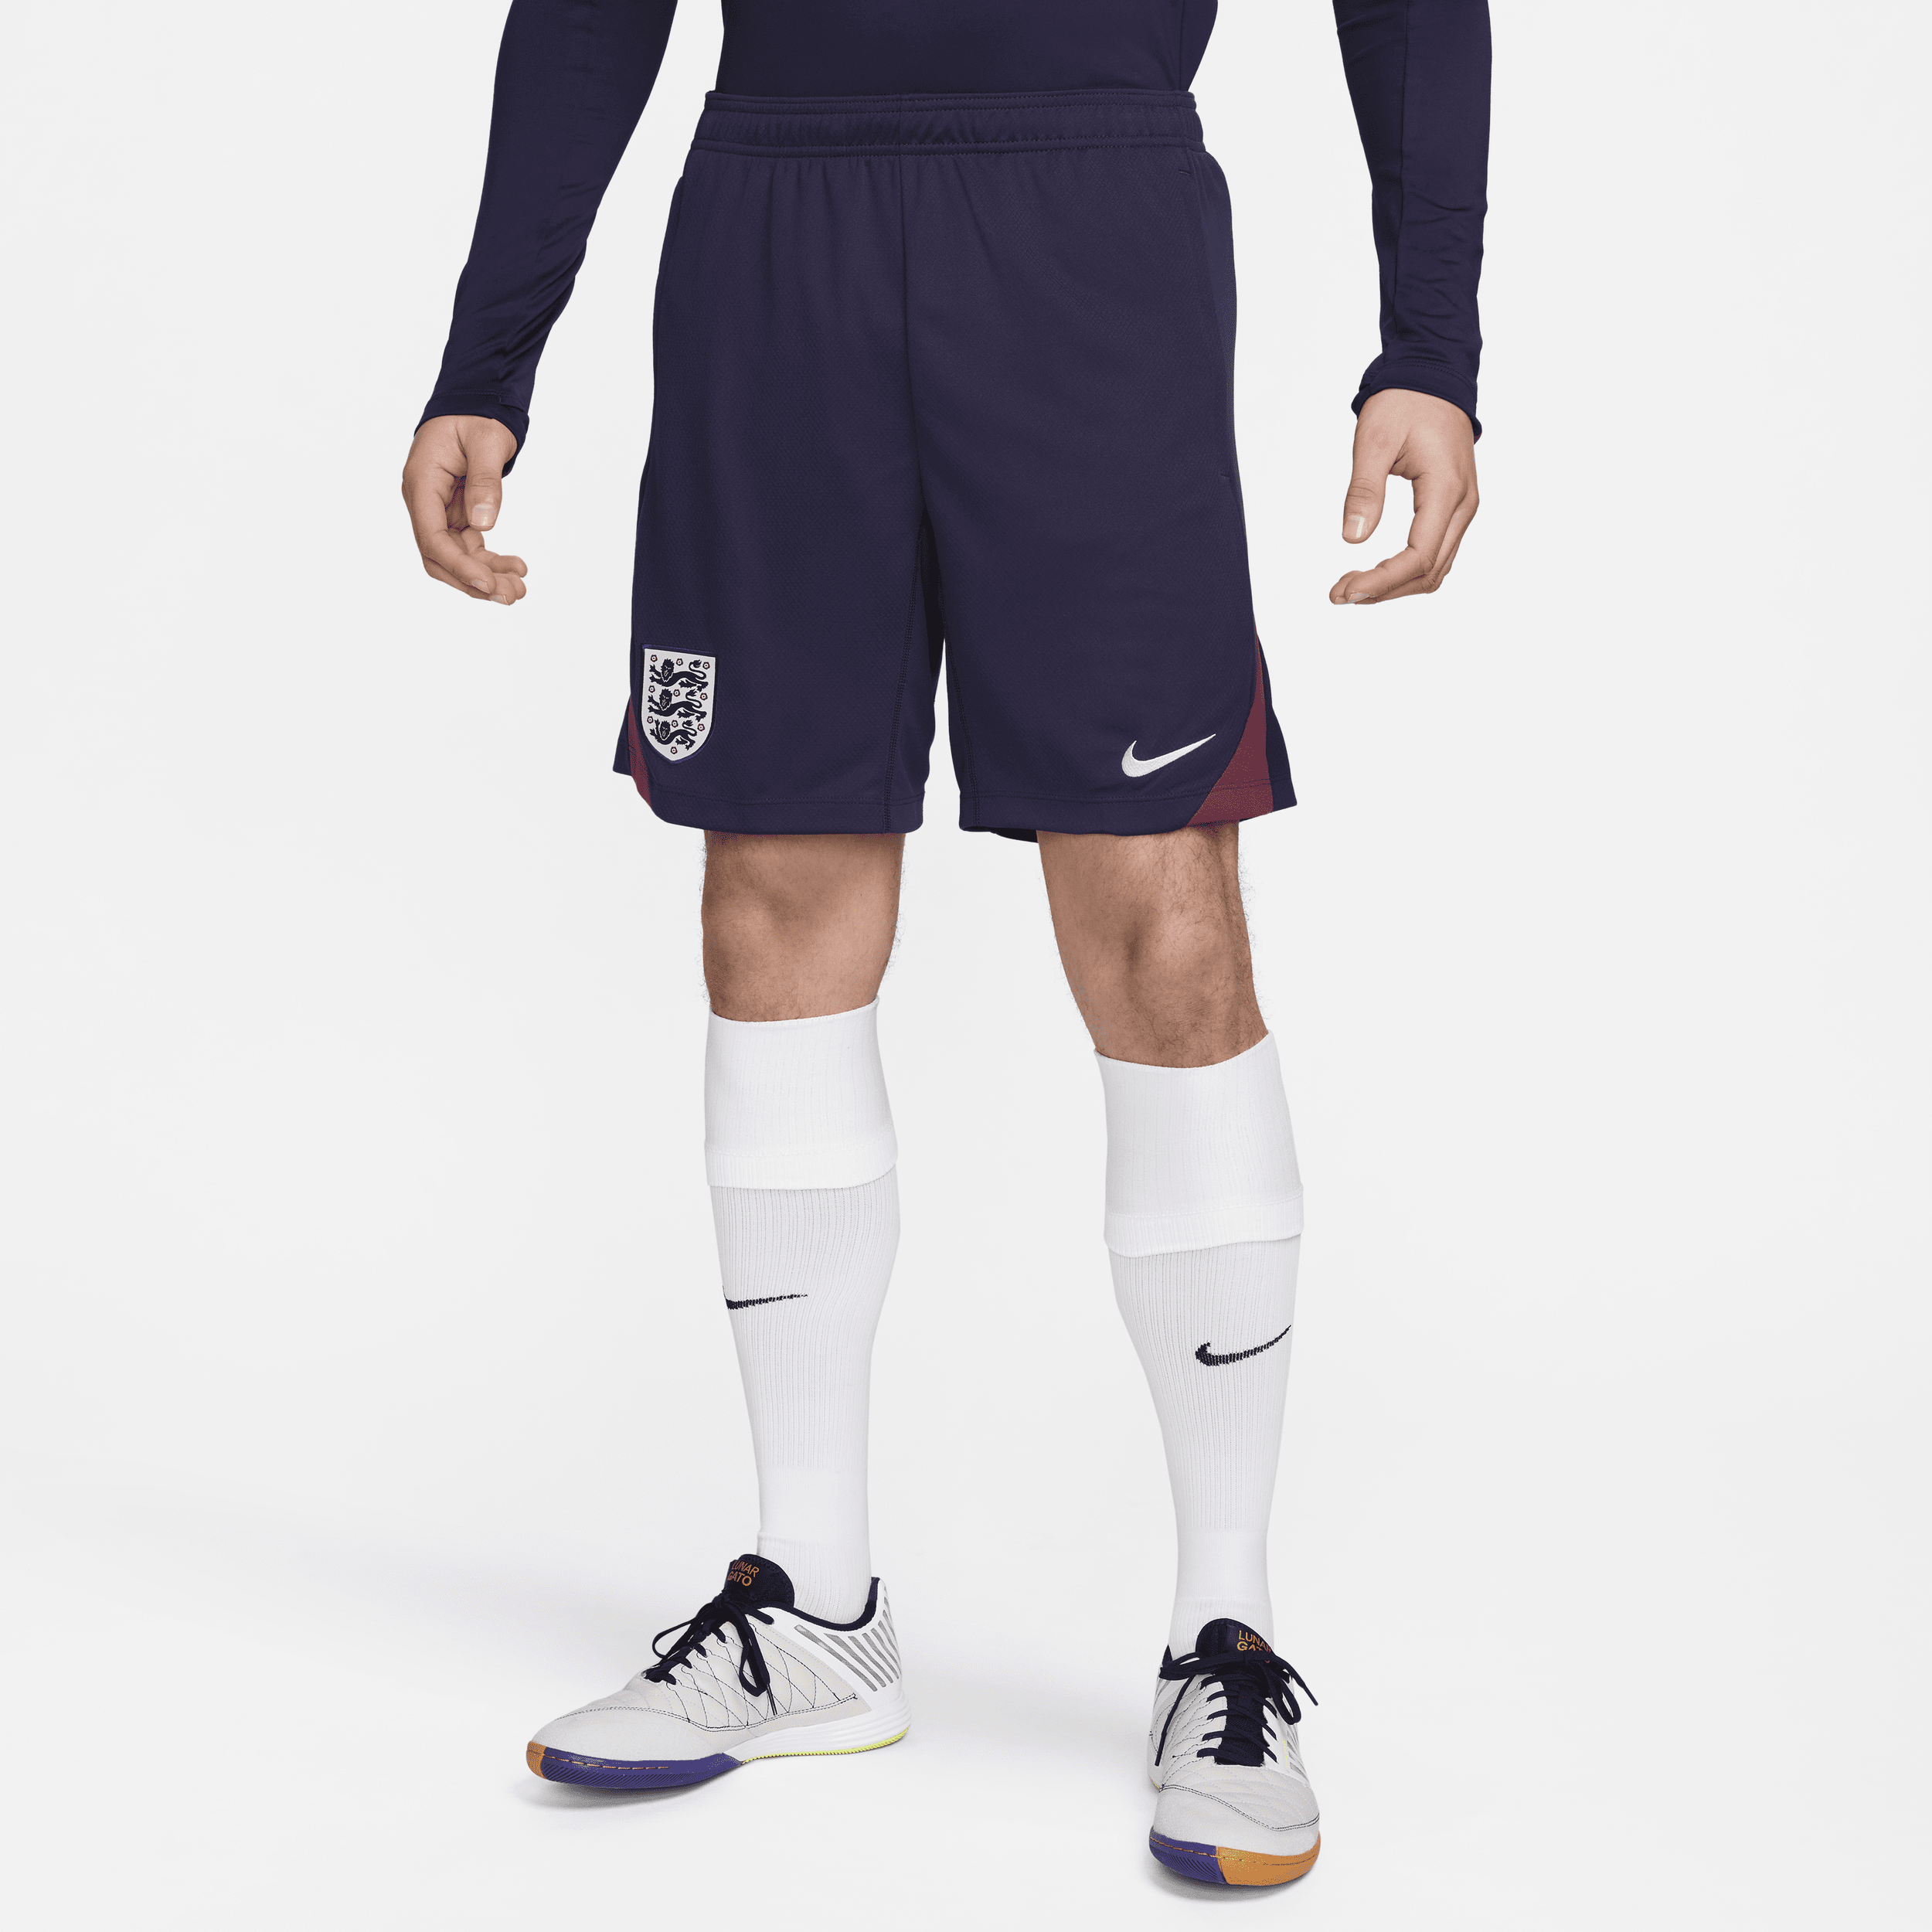 Engeland Strike Nike Dri-FIT knit voetbalshorts voor heren - Paars